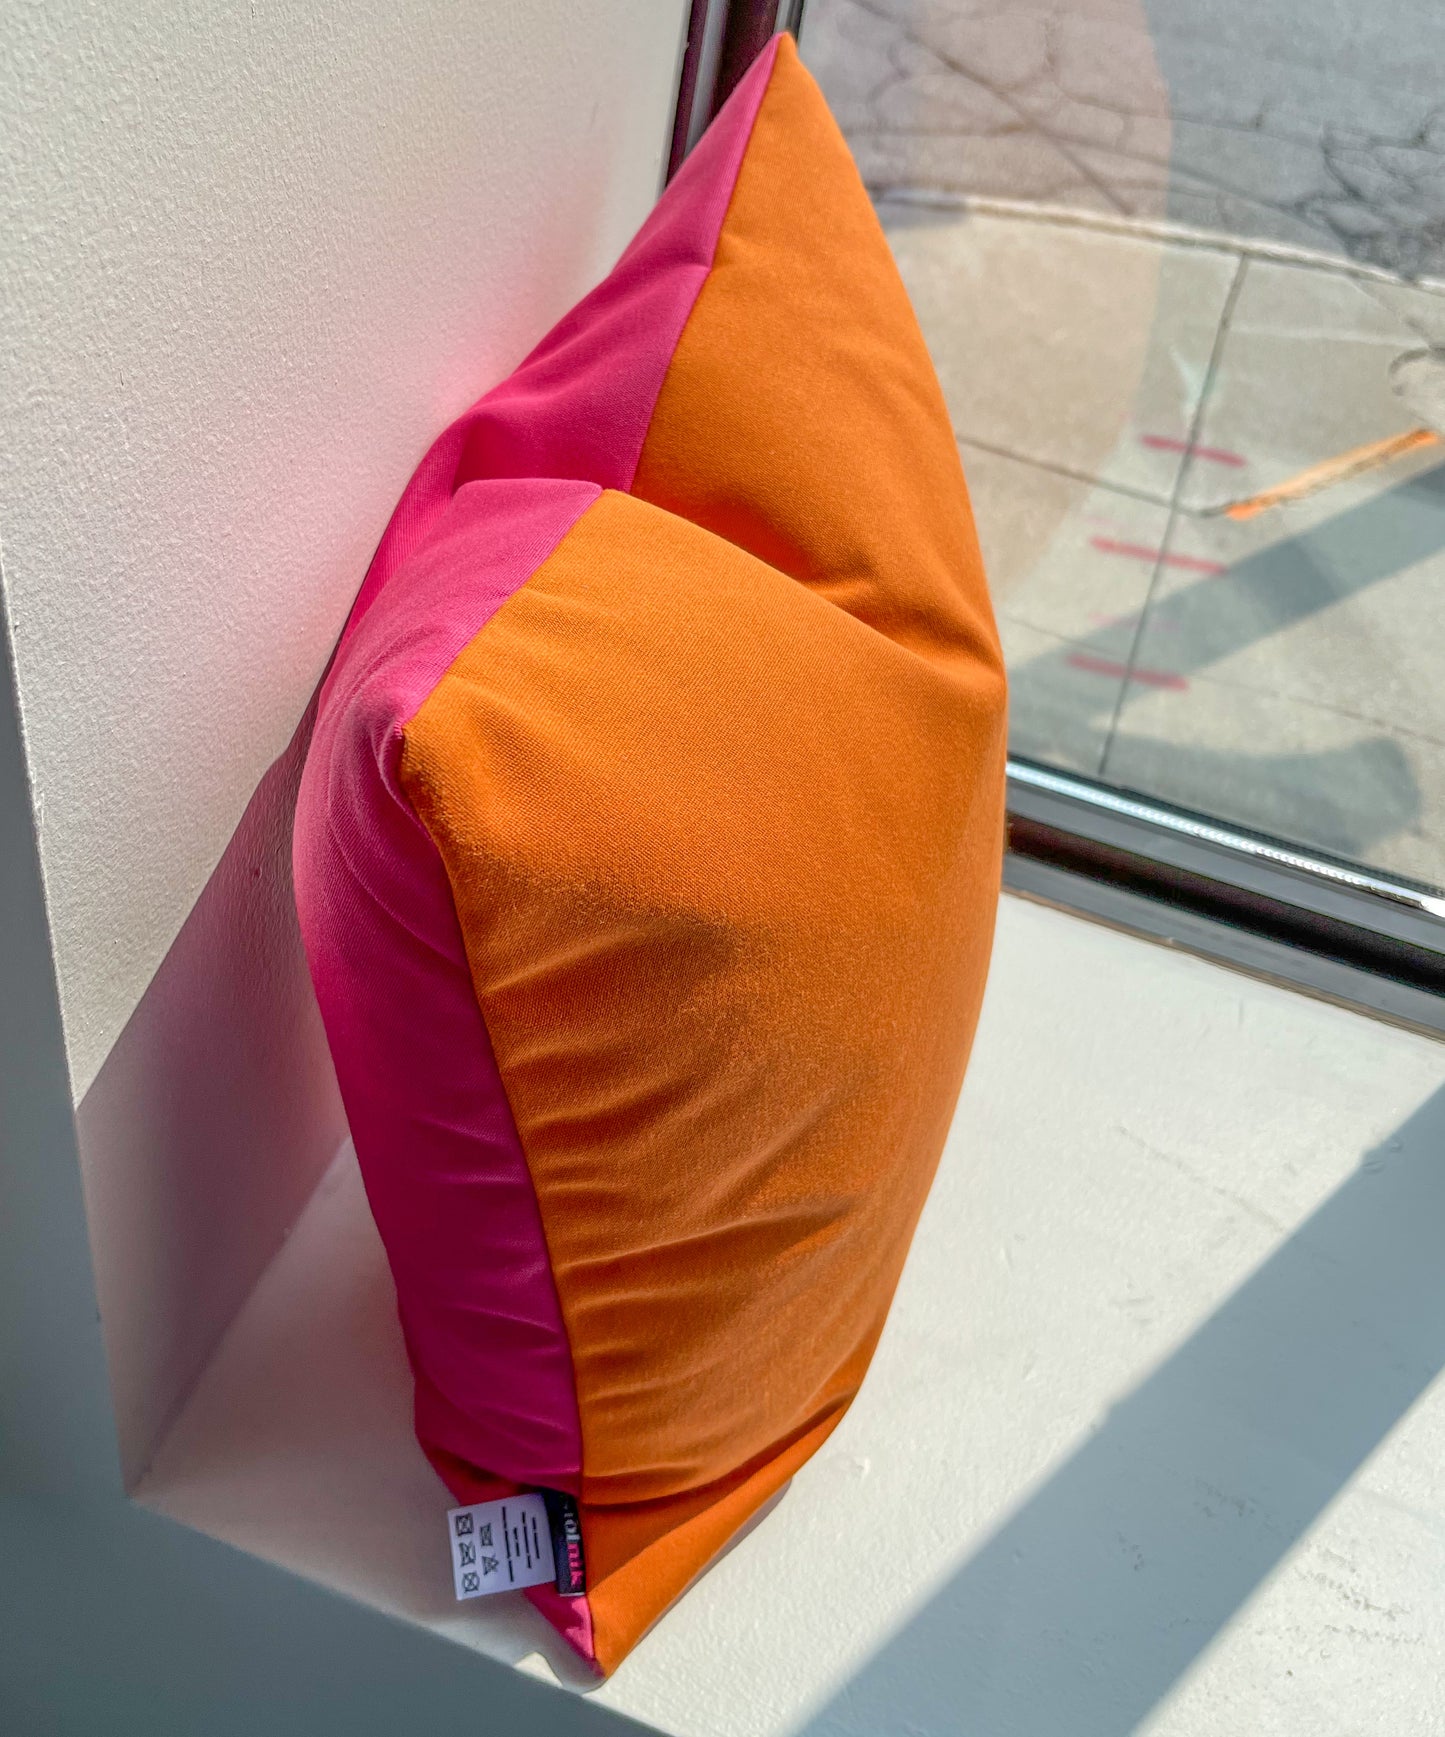 Sunbrella Outdoor Pillows